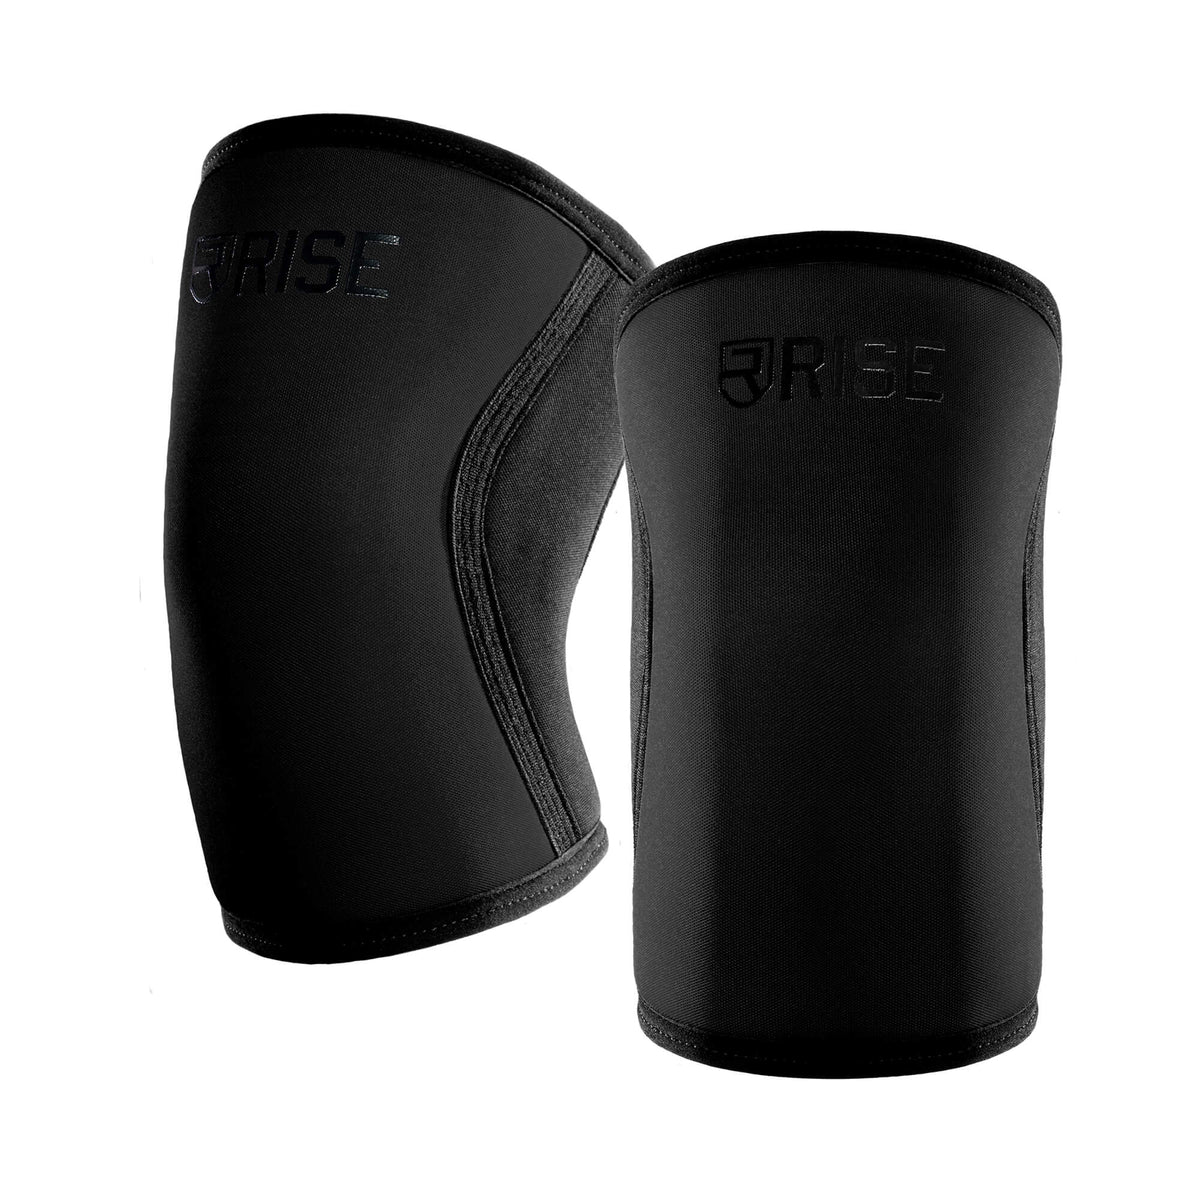 7mm Knee Sleeves (25cm) - Black - Rise